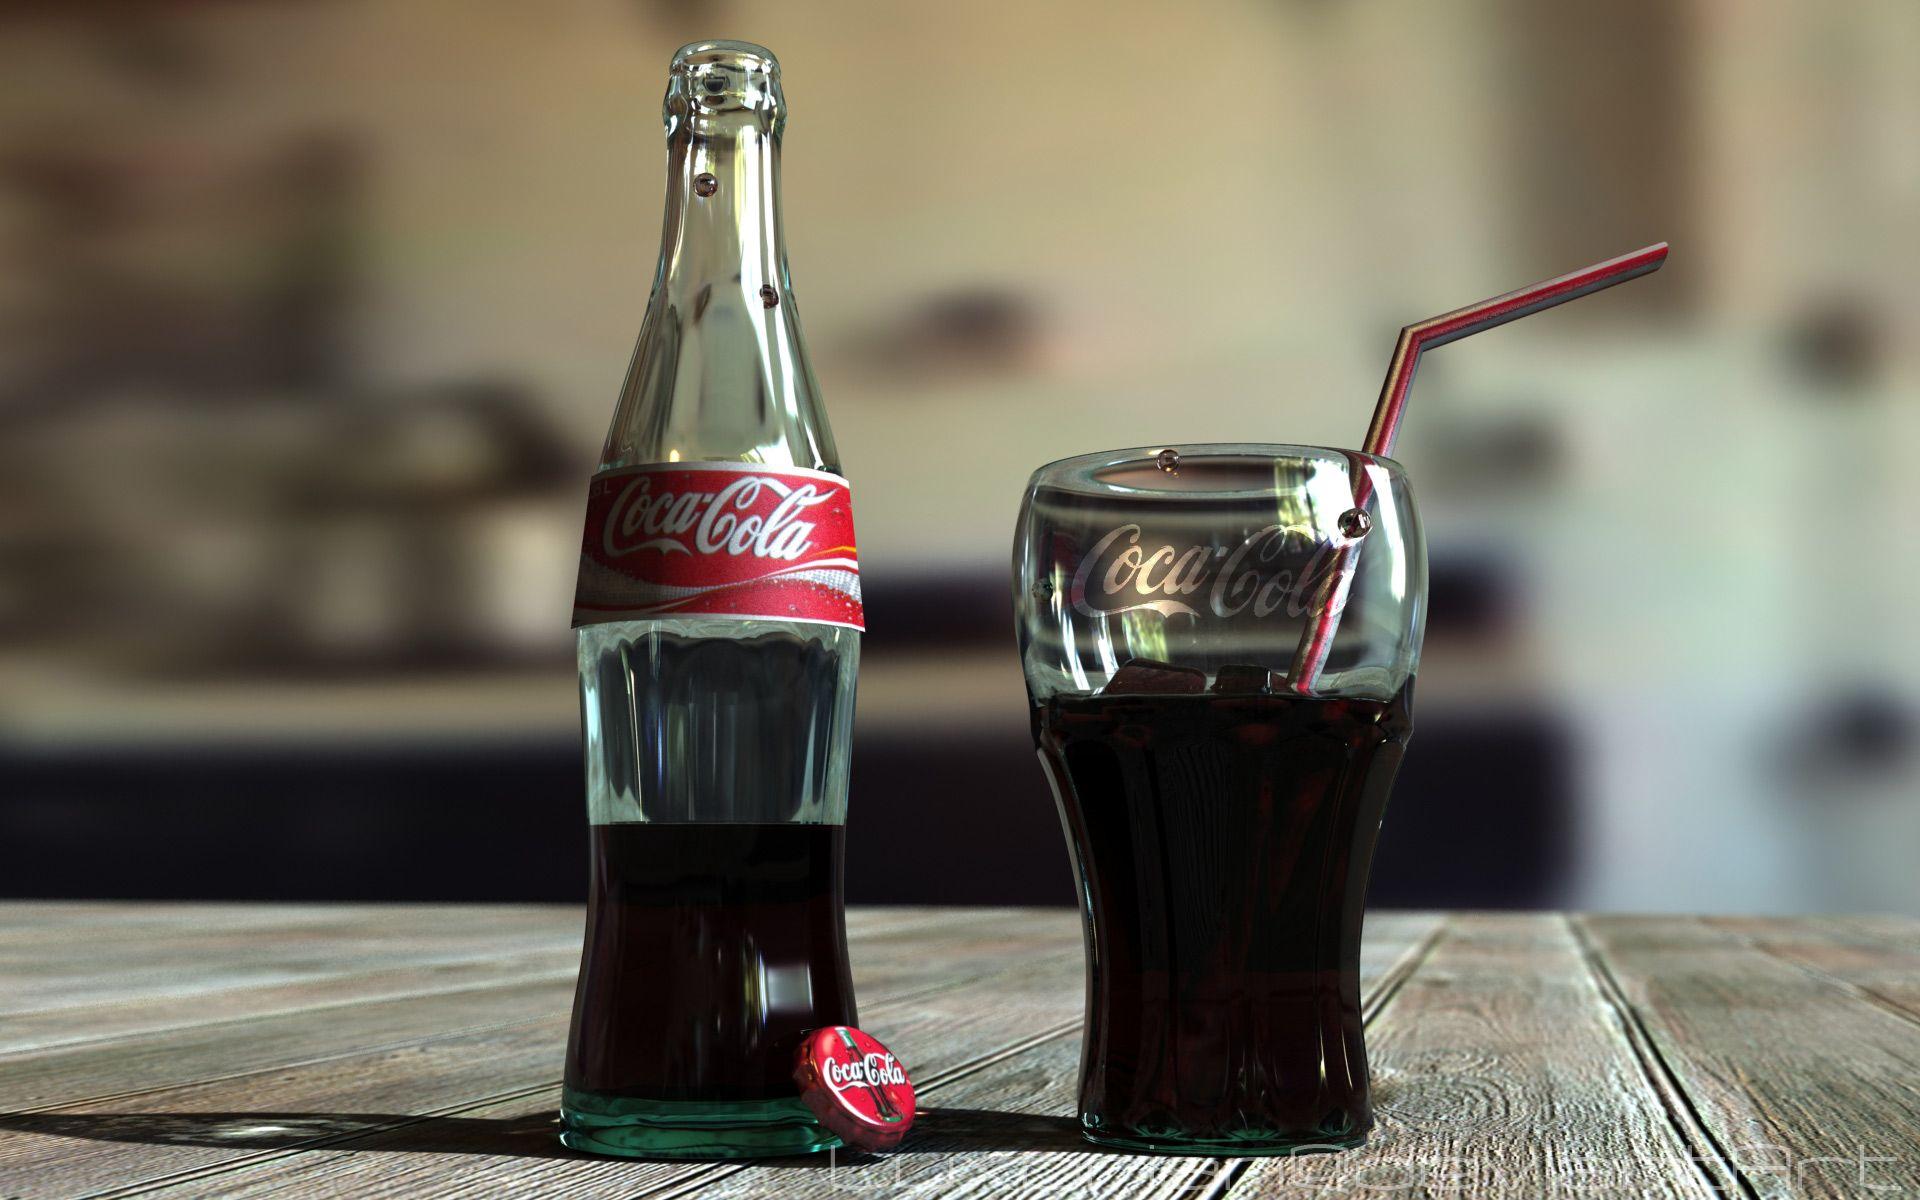 Coca Cola Wallpapers - Top 35 Best Coca Cola Backgrounds Download